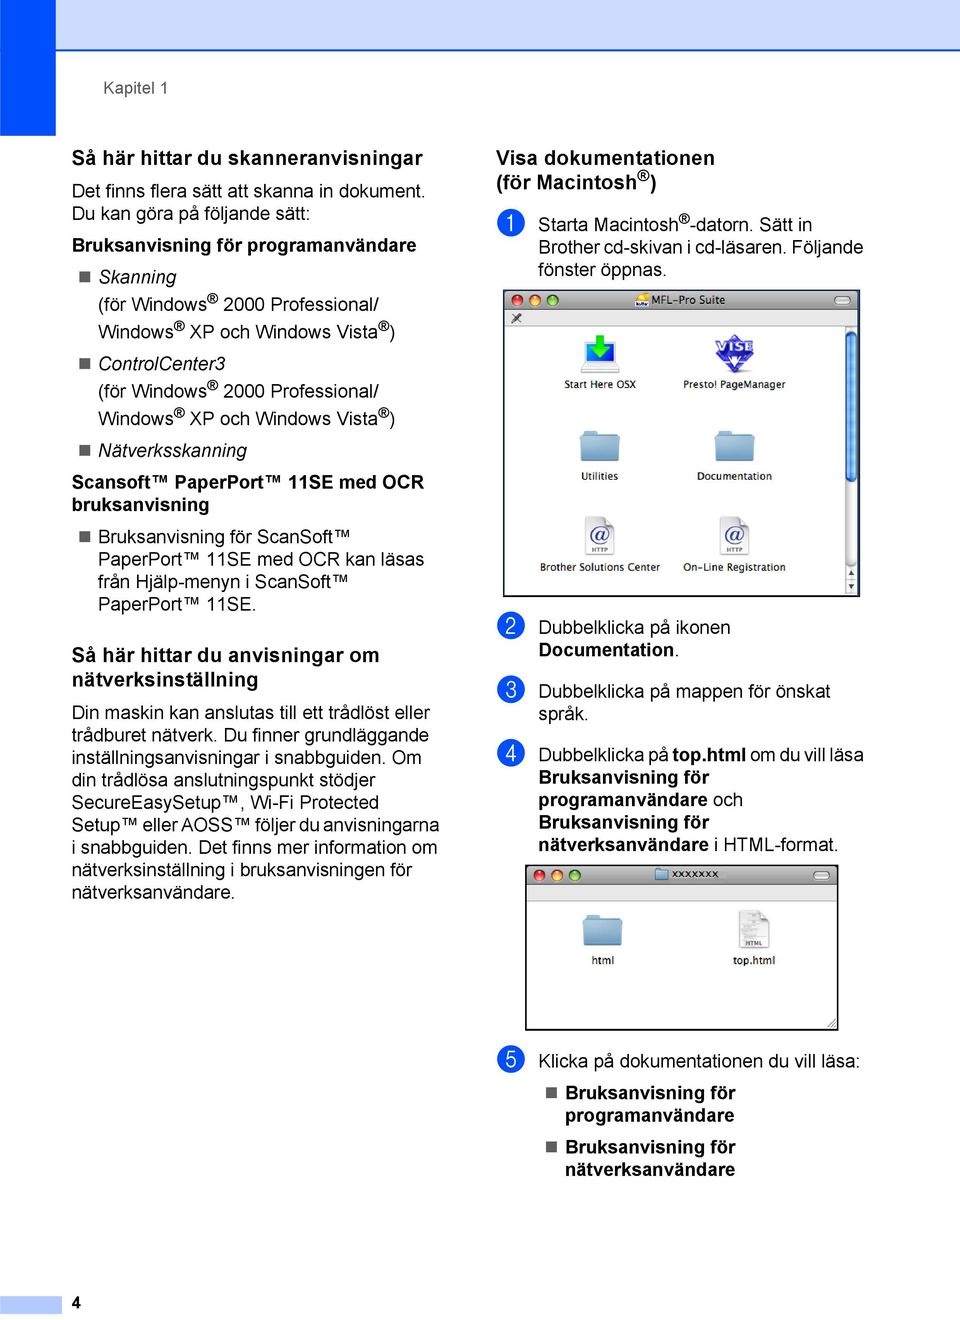 Windows Vista ) Nätverksskanning Scansoft PaperPort 11SE med OCR bruksanvisning Bruksanvisning för ScanSoft PaperPort 11SE med OCR kan läsas från Hjälp-menyn i ScanSoft PaperPort 11SE.